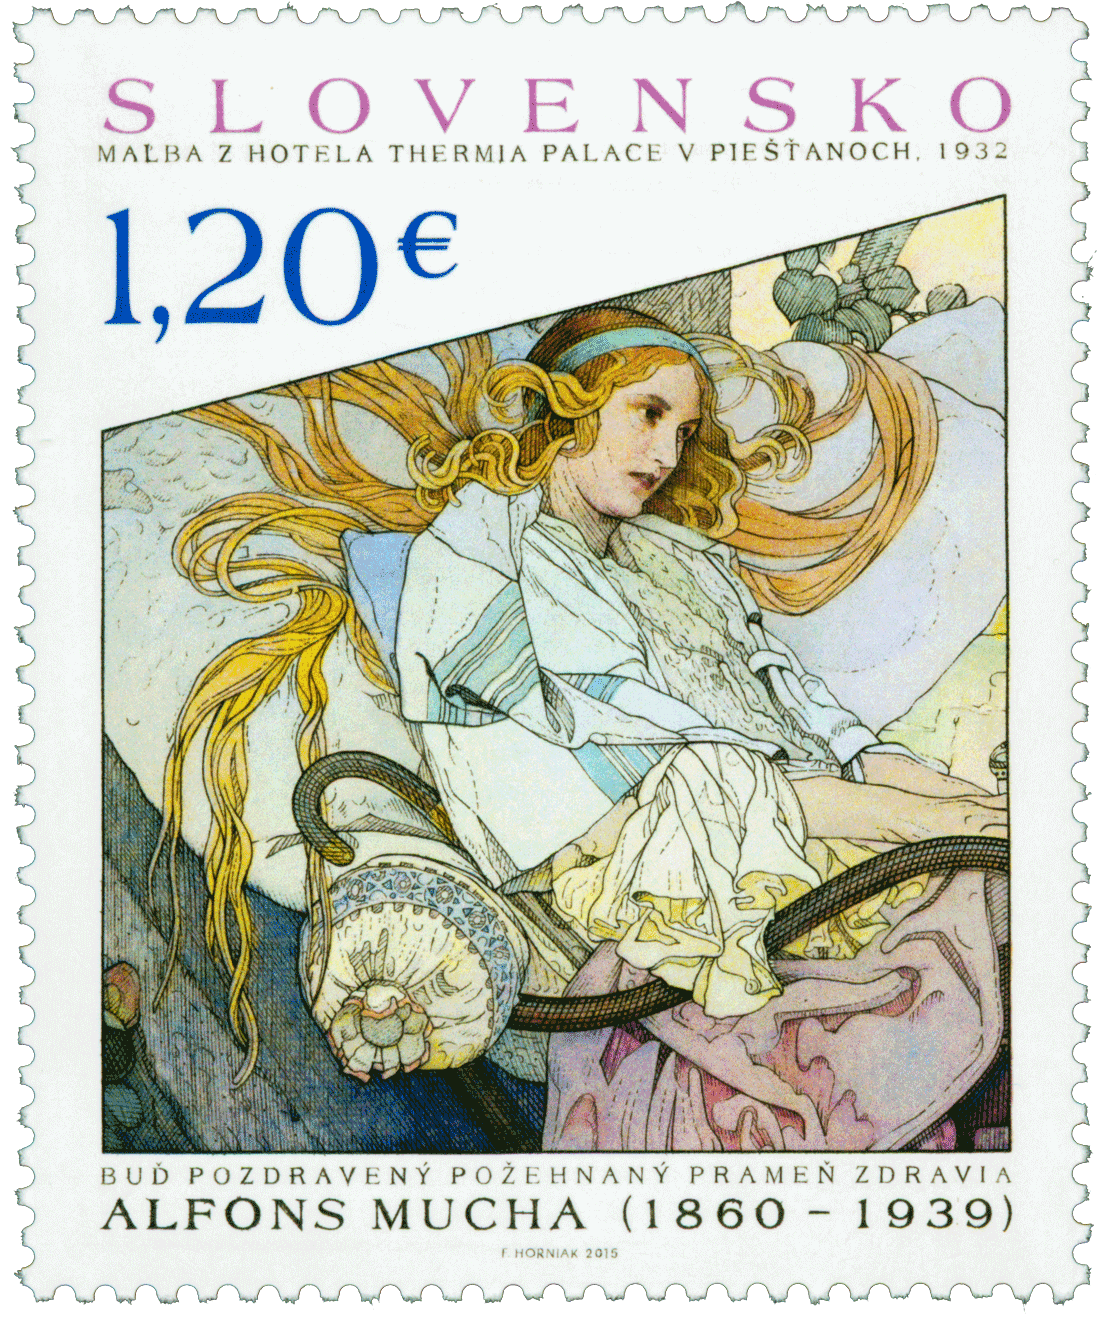 602 - UMENIE: Alfons Mucha – maľba z hotela Thermia Palace v Piešťanoch